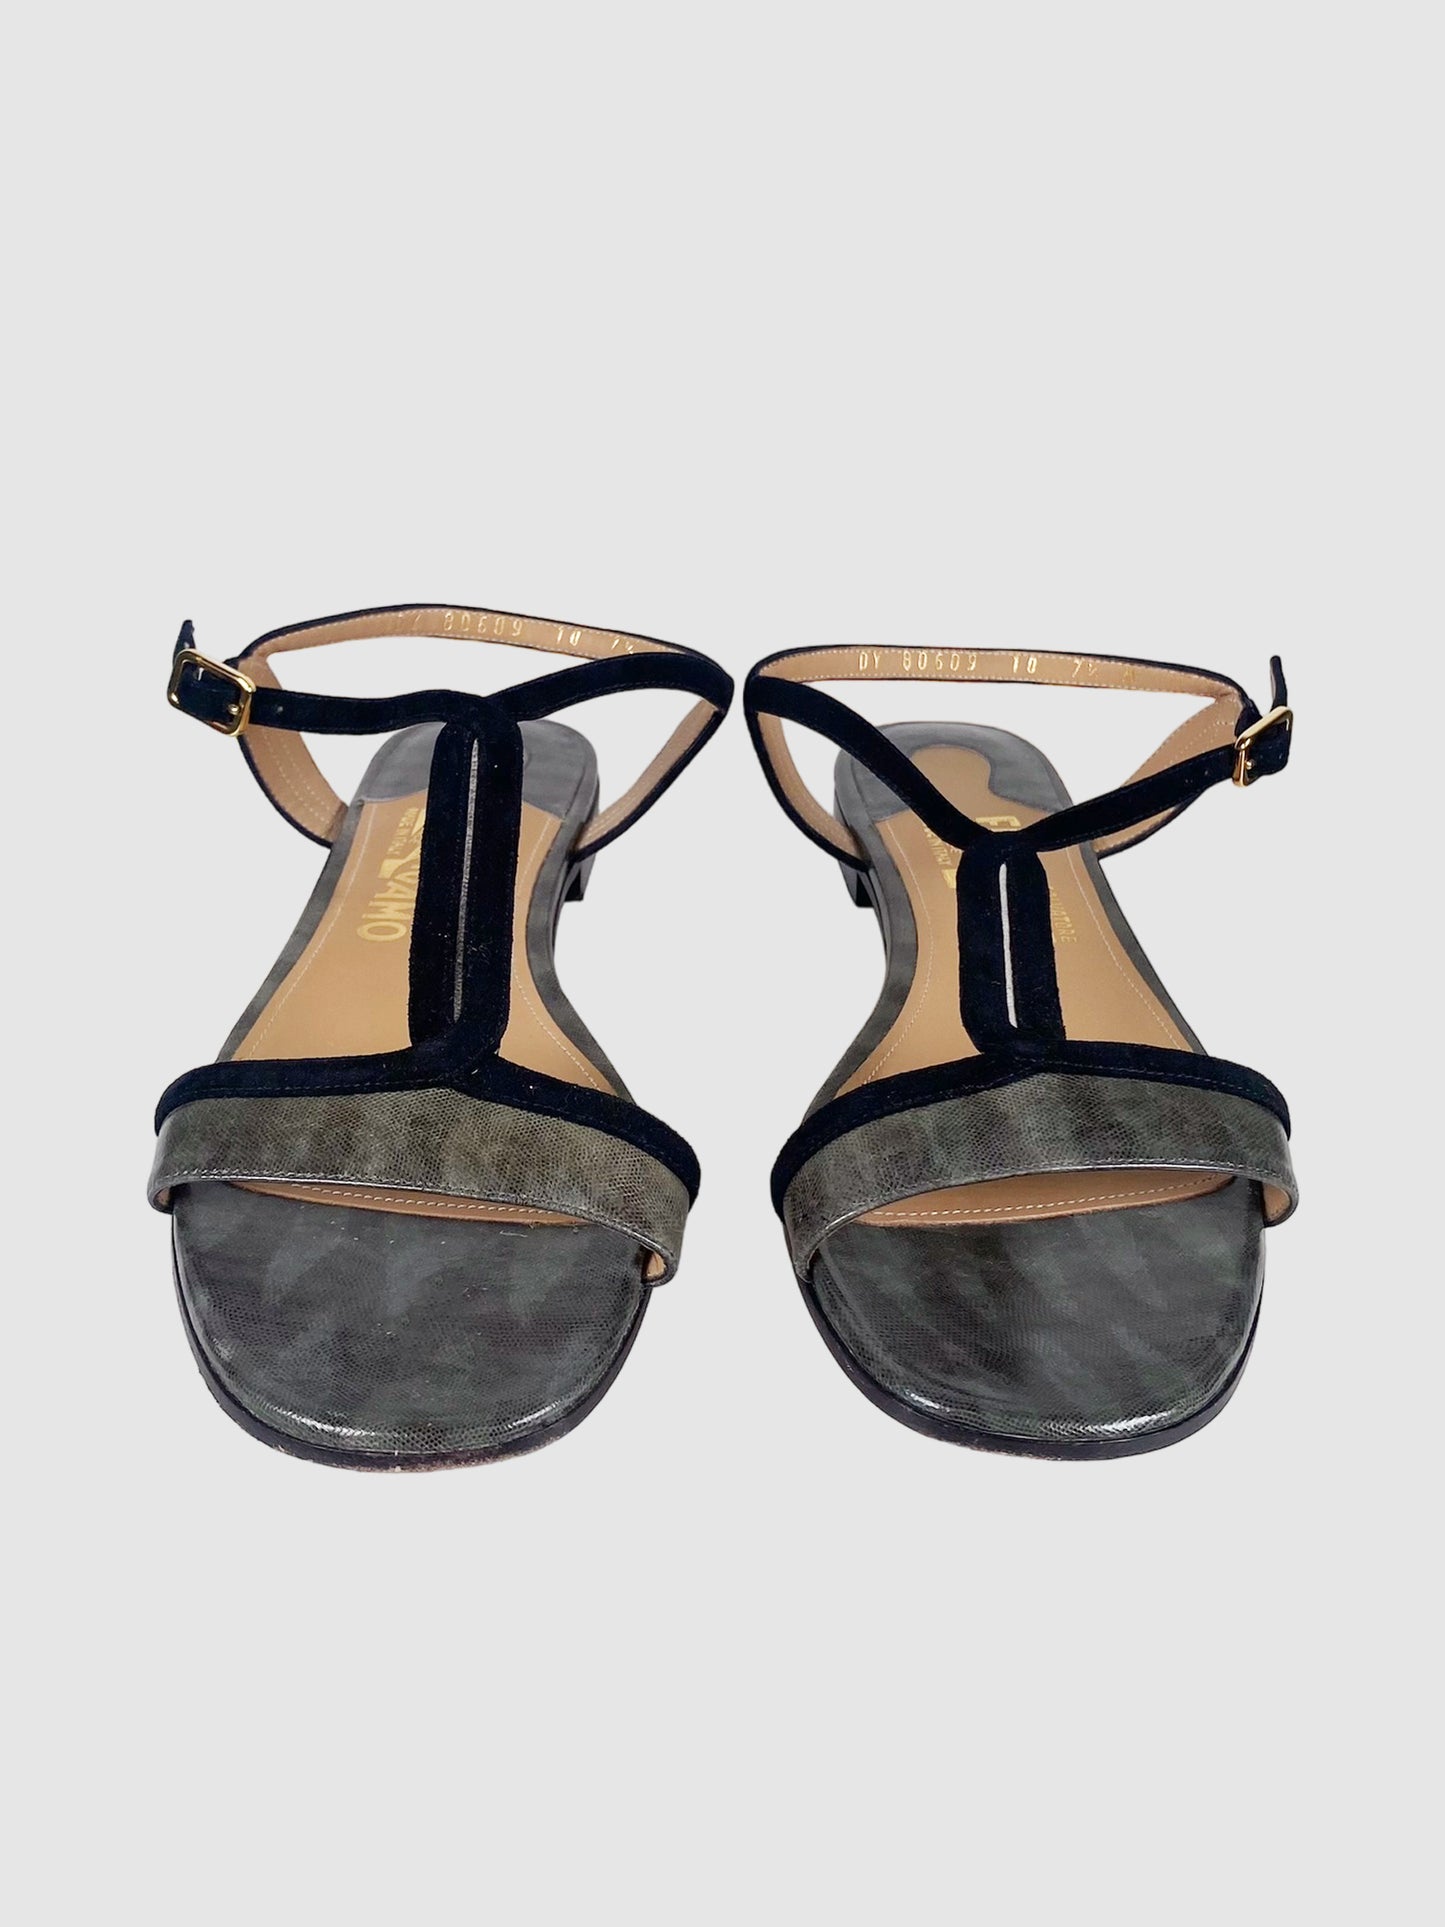 Salvatore Ferragamo Leather Sandal - Size 7.5